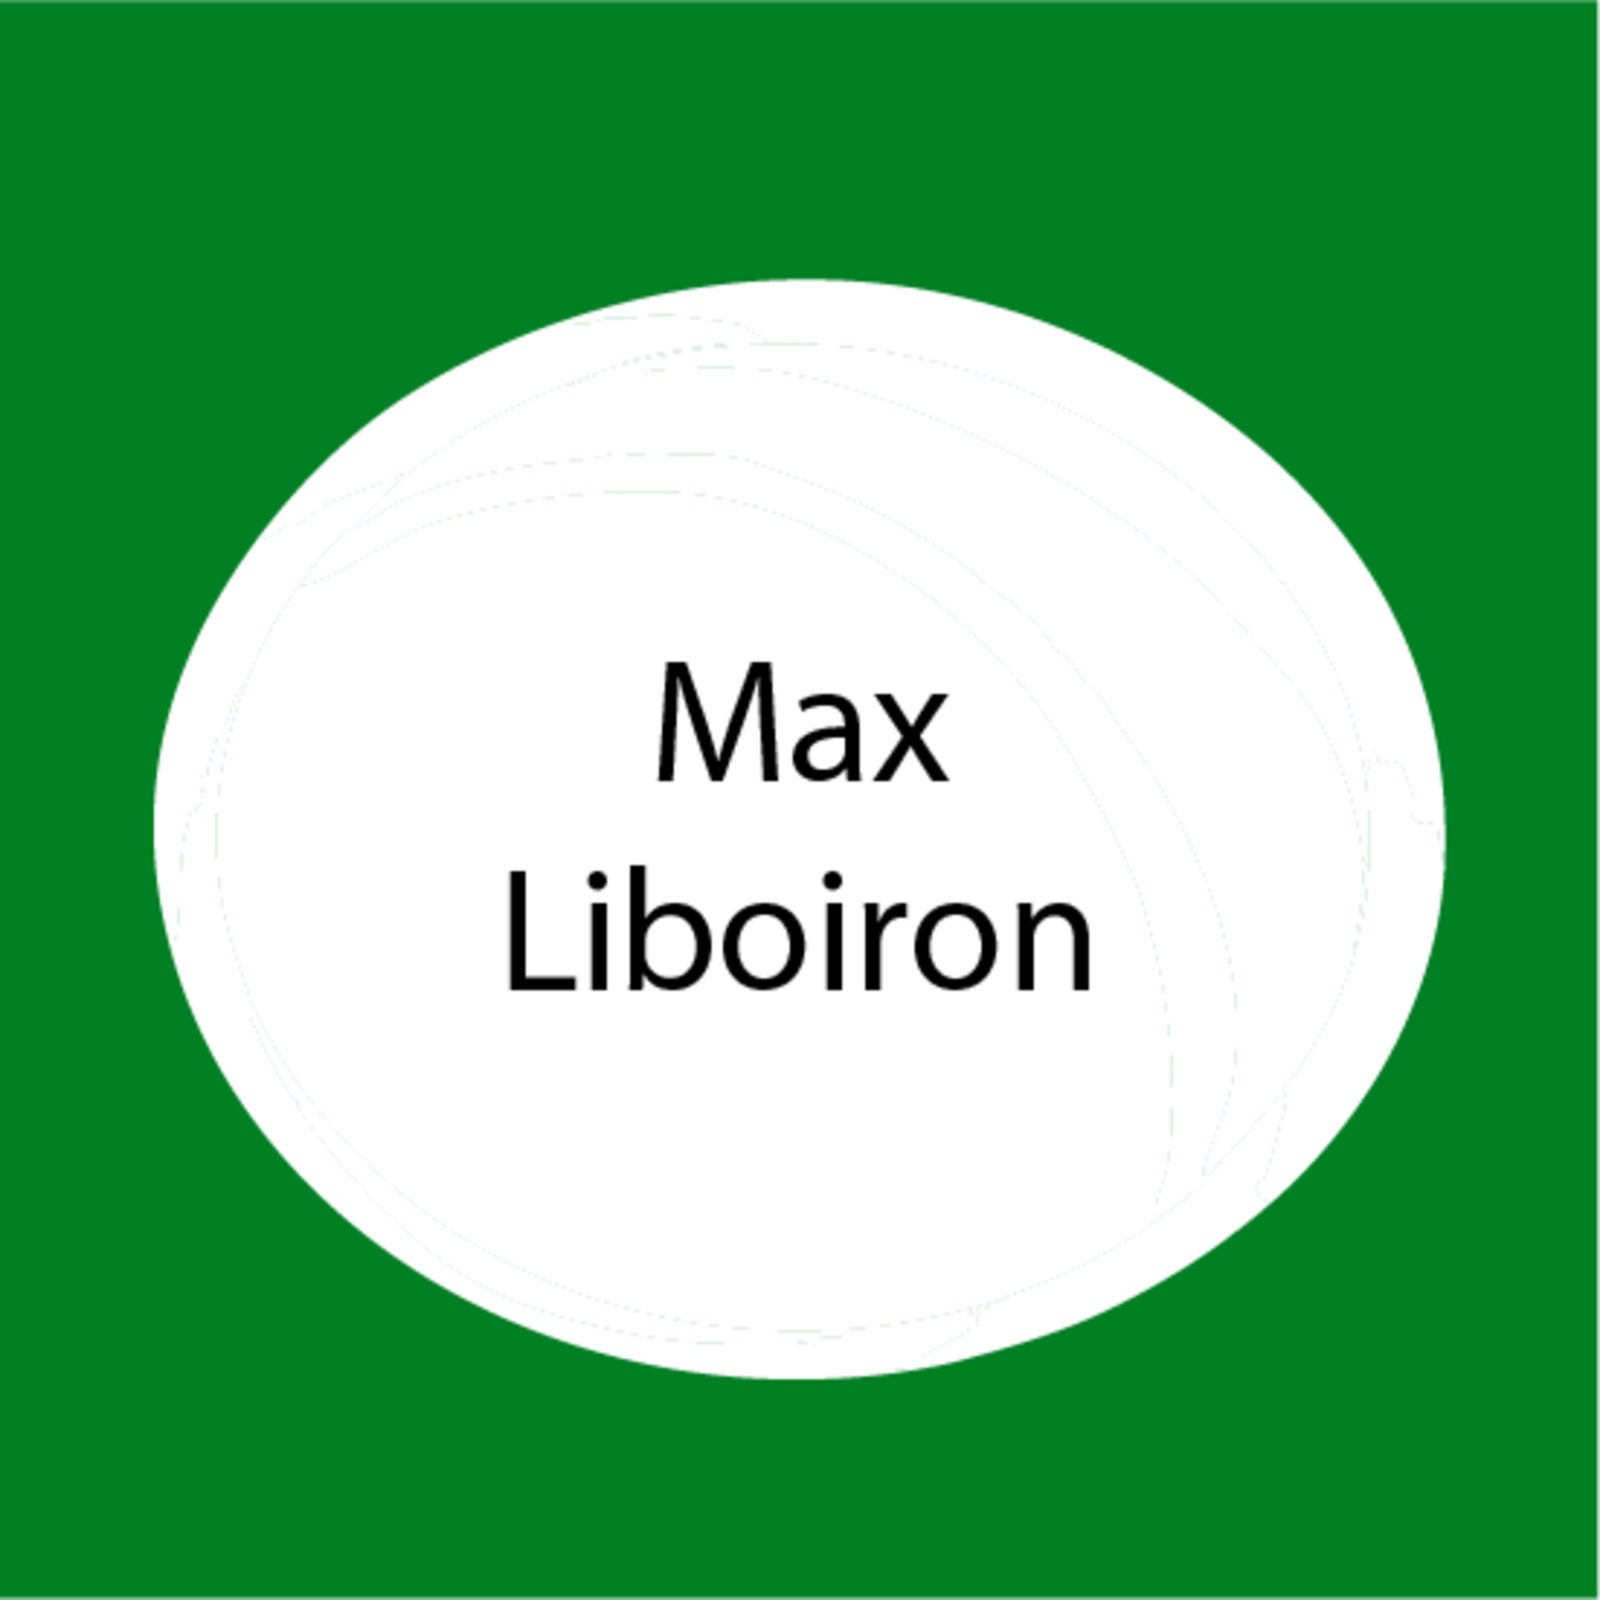 Max Liboiron